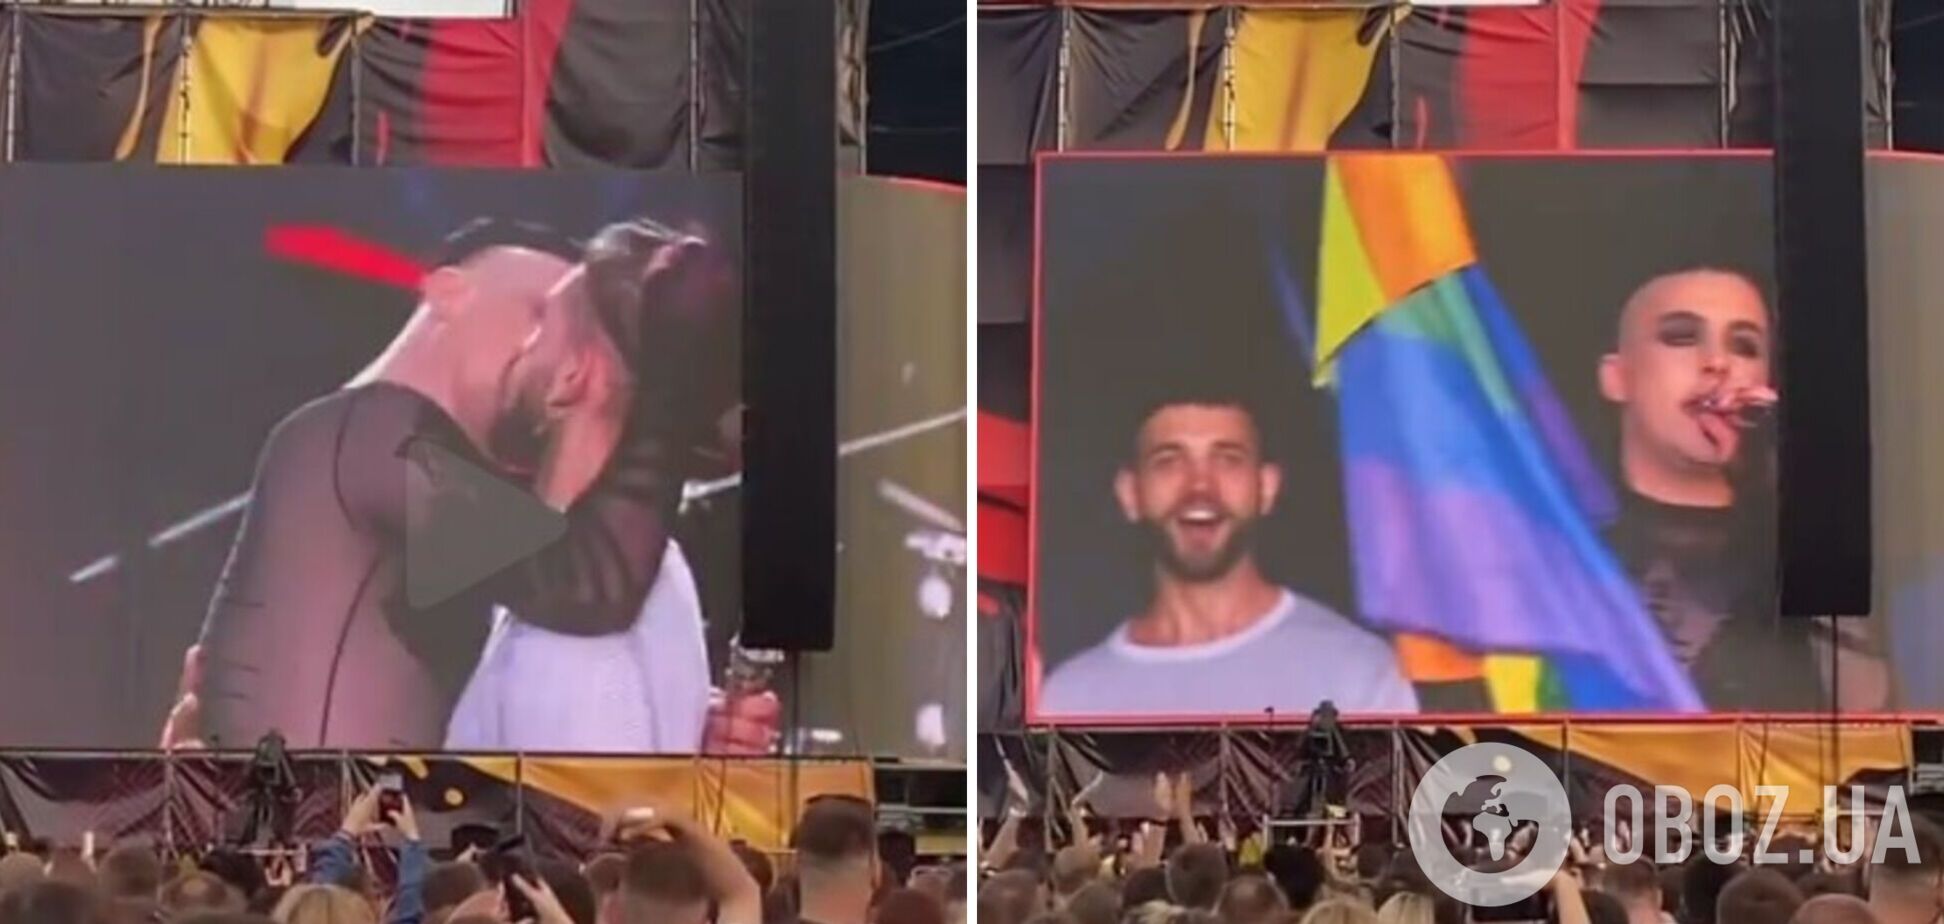 MELOVIN на Atlas Weekend развернул флаг ЛГБТ и поцеловал мужчину. Видео 18+, которое вырезали из эфира